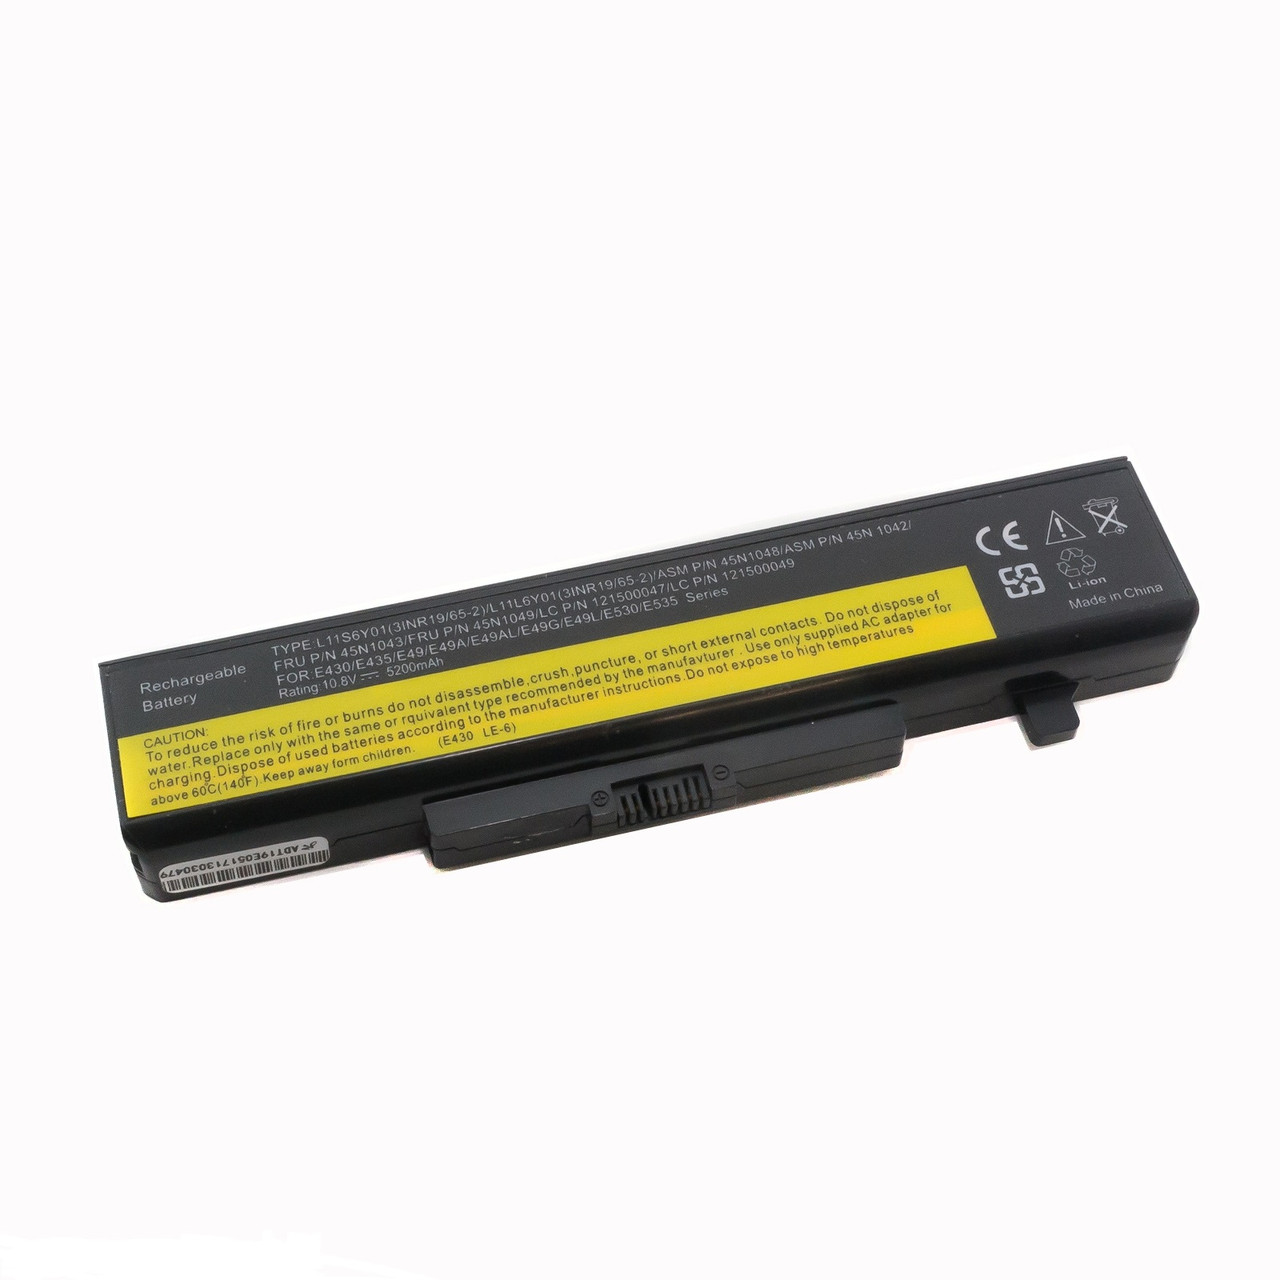 Оригинальный аккумулятор (батарея) для ноутбука Lenovo P580, P585 (L11S6Y01) 10.8V 48Wh